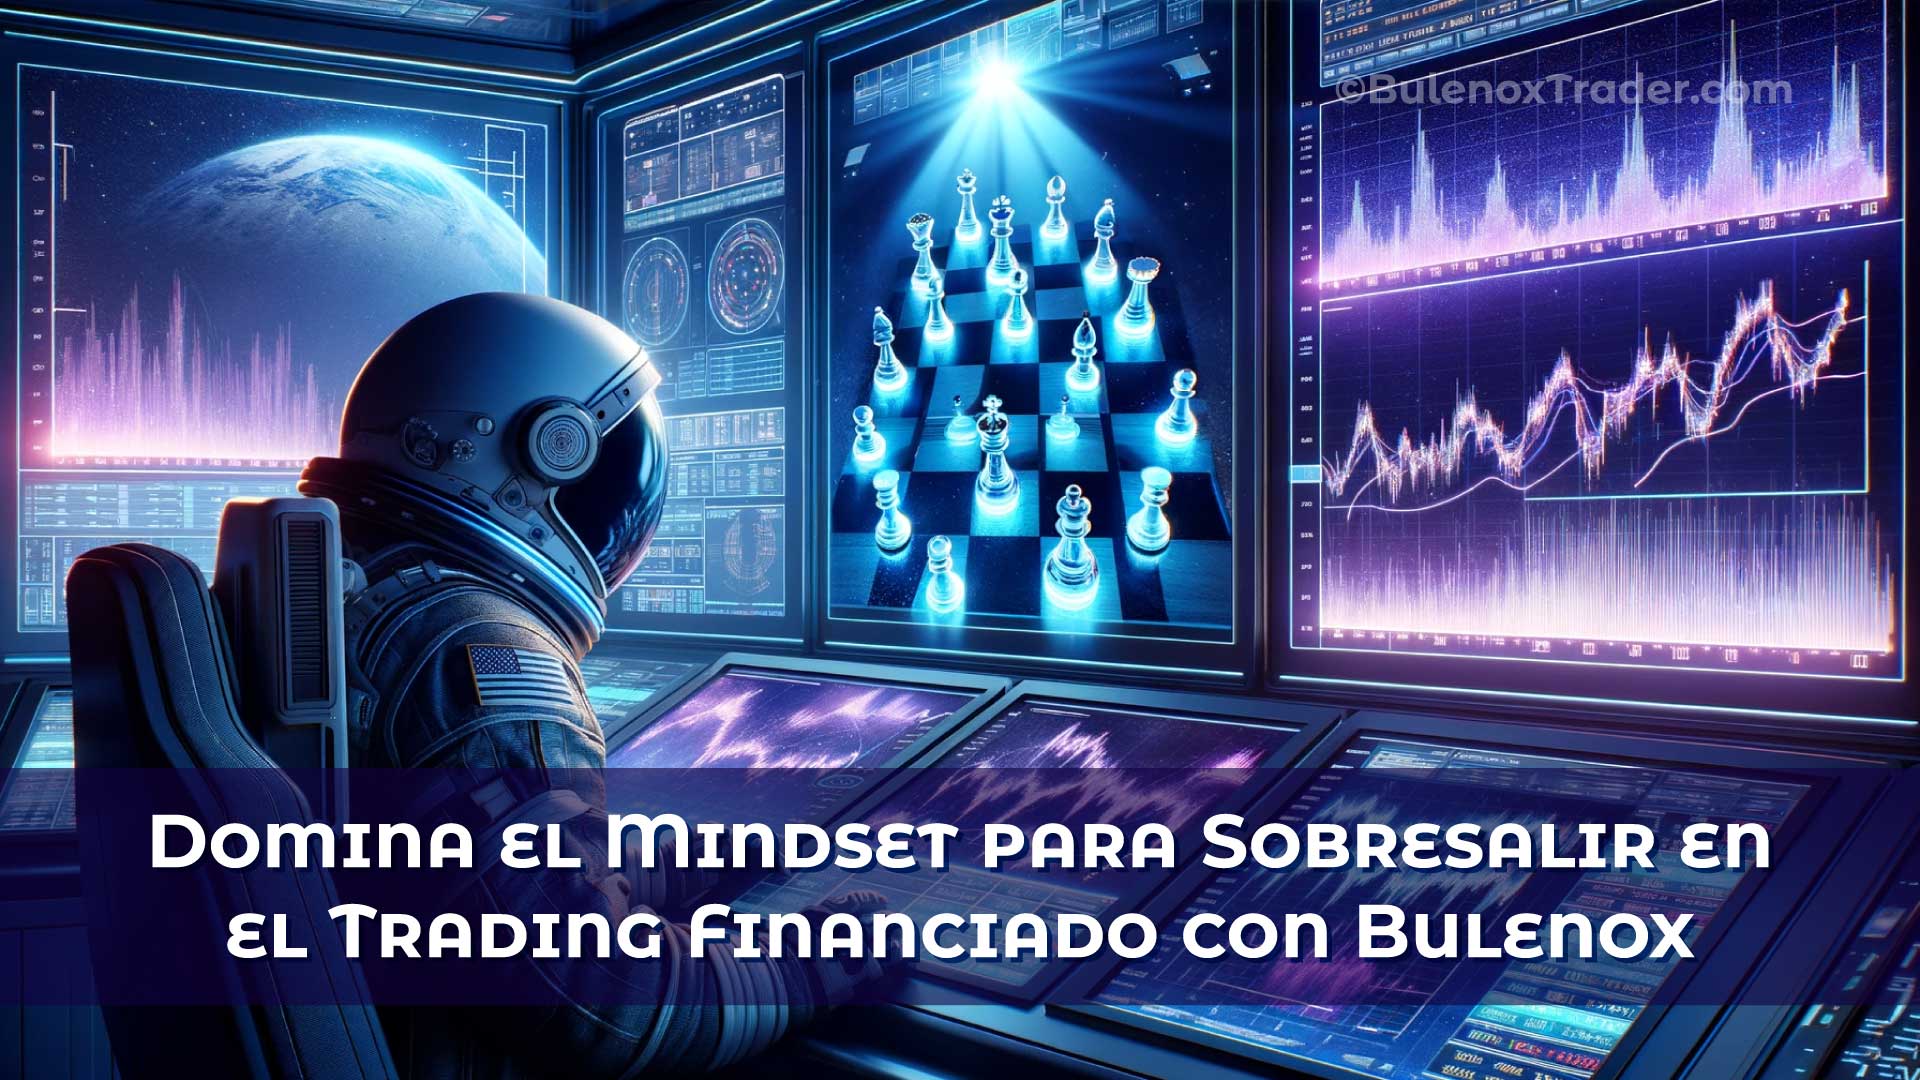 Domina-el-Mindset-para-Sobresalir-en-el-Trading-Financiado-con-Bulenox-on-Bulenox-Trader-Website